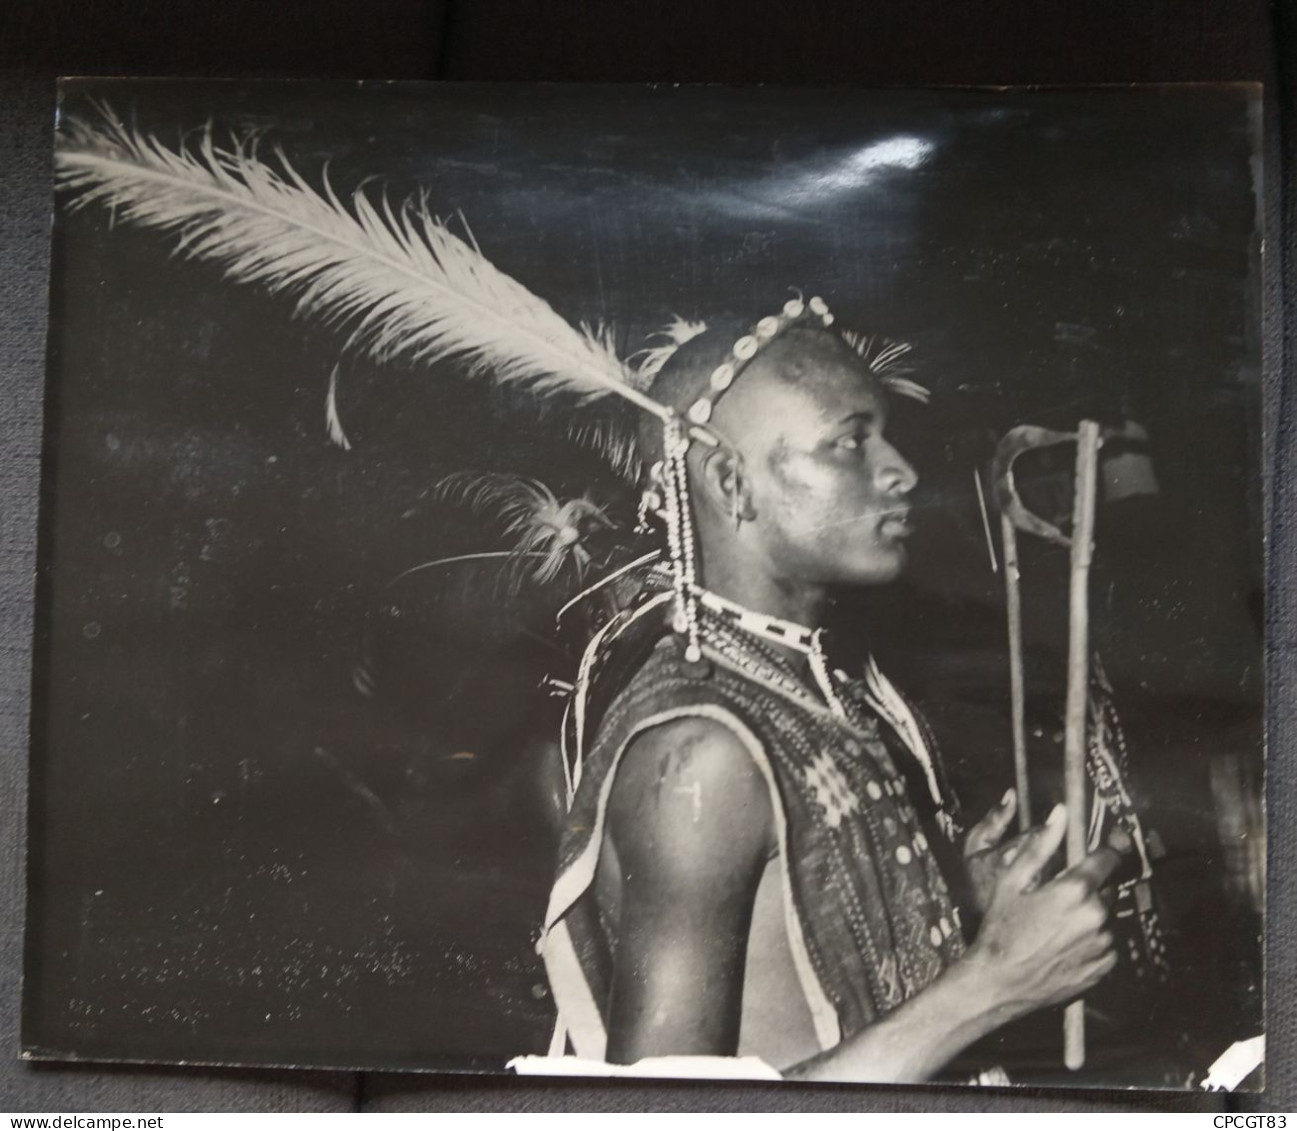 GUERRIERS AFRICAINS - 2 PHOTOS GRANDE TAILLE - 50X40cm - Auteur Inconnu - Trou De Punaises - MAGNIFIQUES - état Correct - Afrique